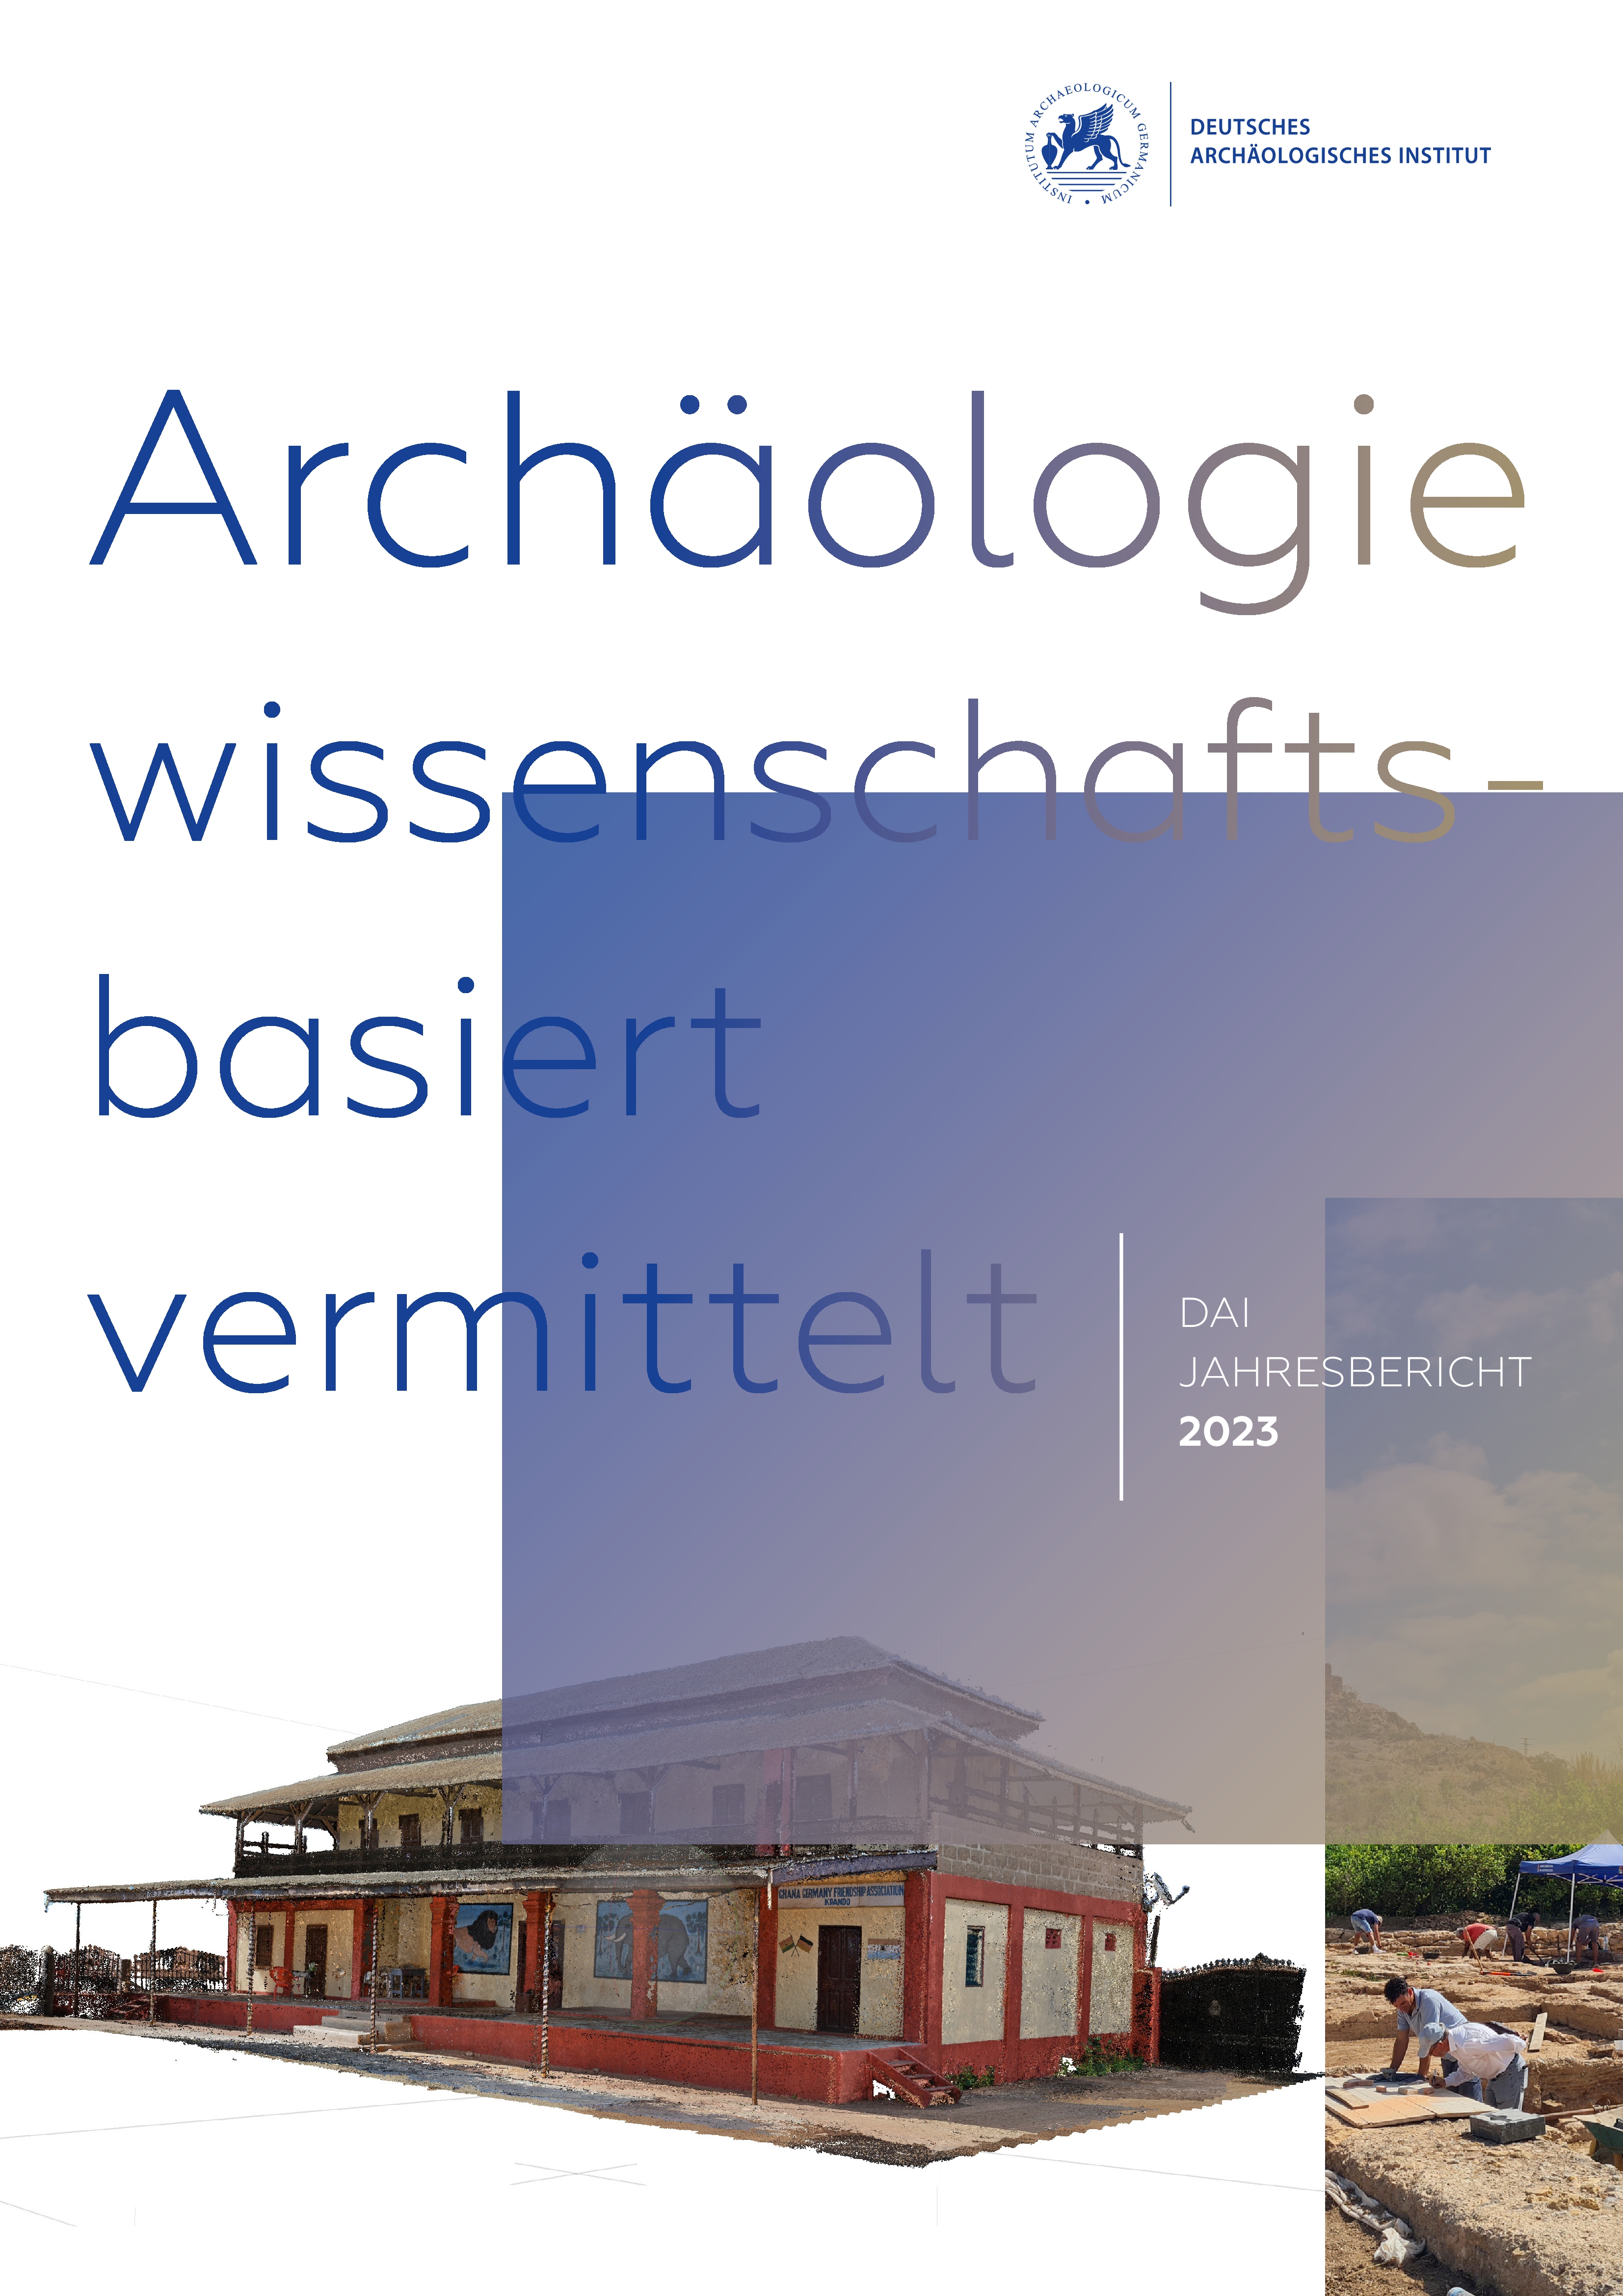 					Ansehen e-Jahresbericht 2023 des Deutschen Archäologischen Instituts
				